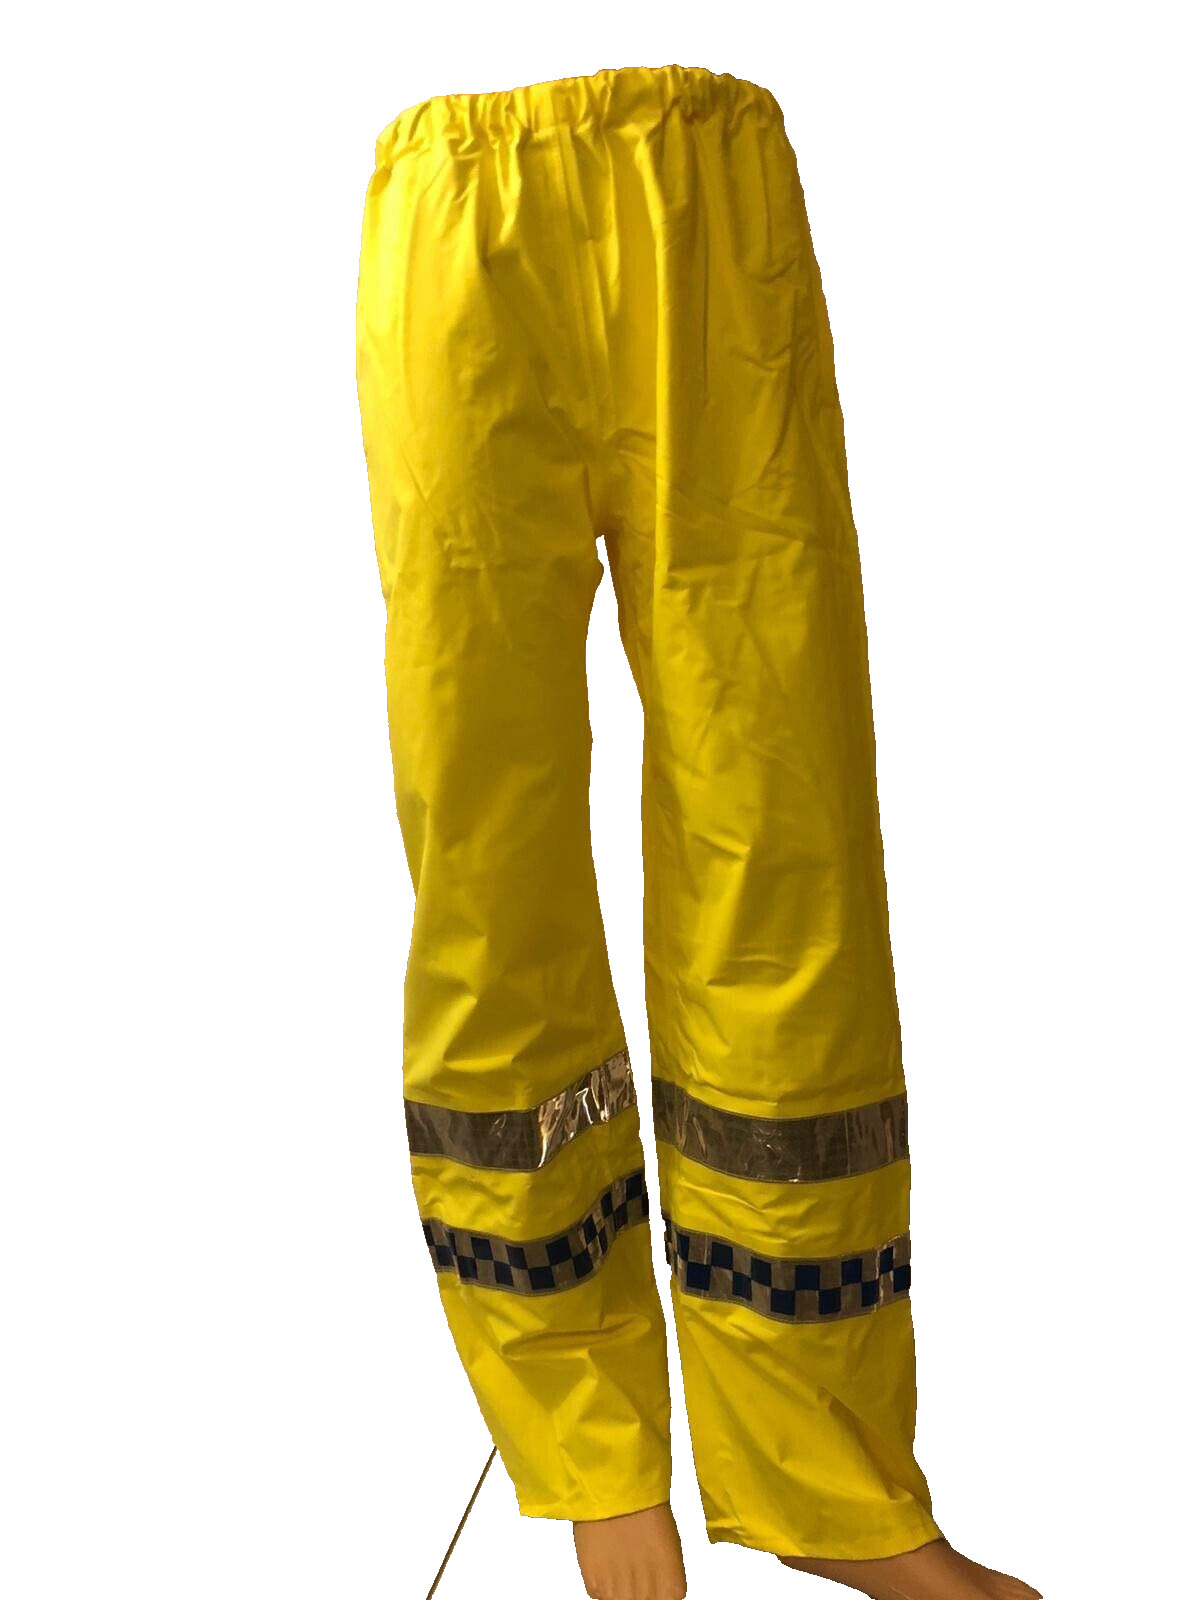 Ex Police Hi Vis Waterproof Over Trousers Security Emergency Workwear